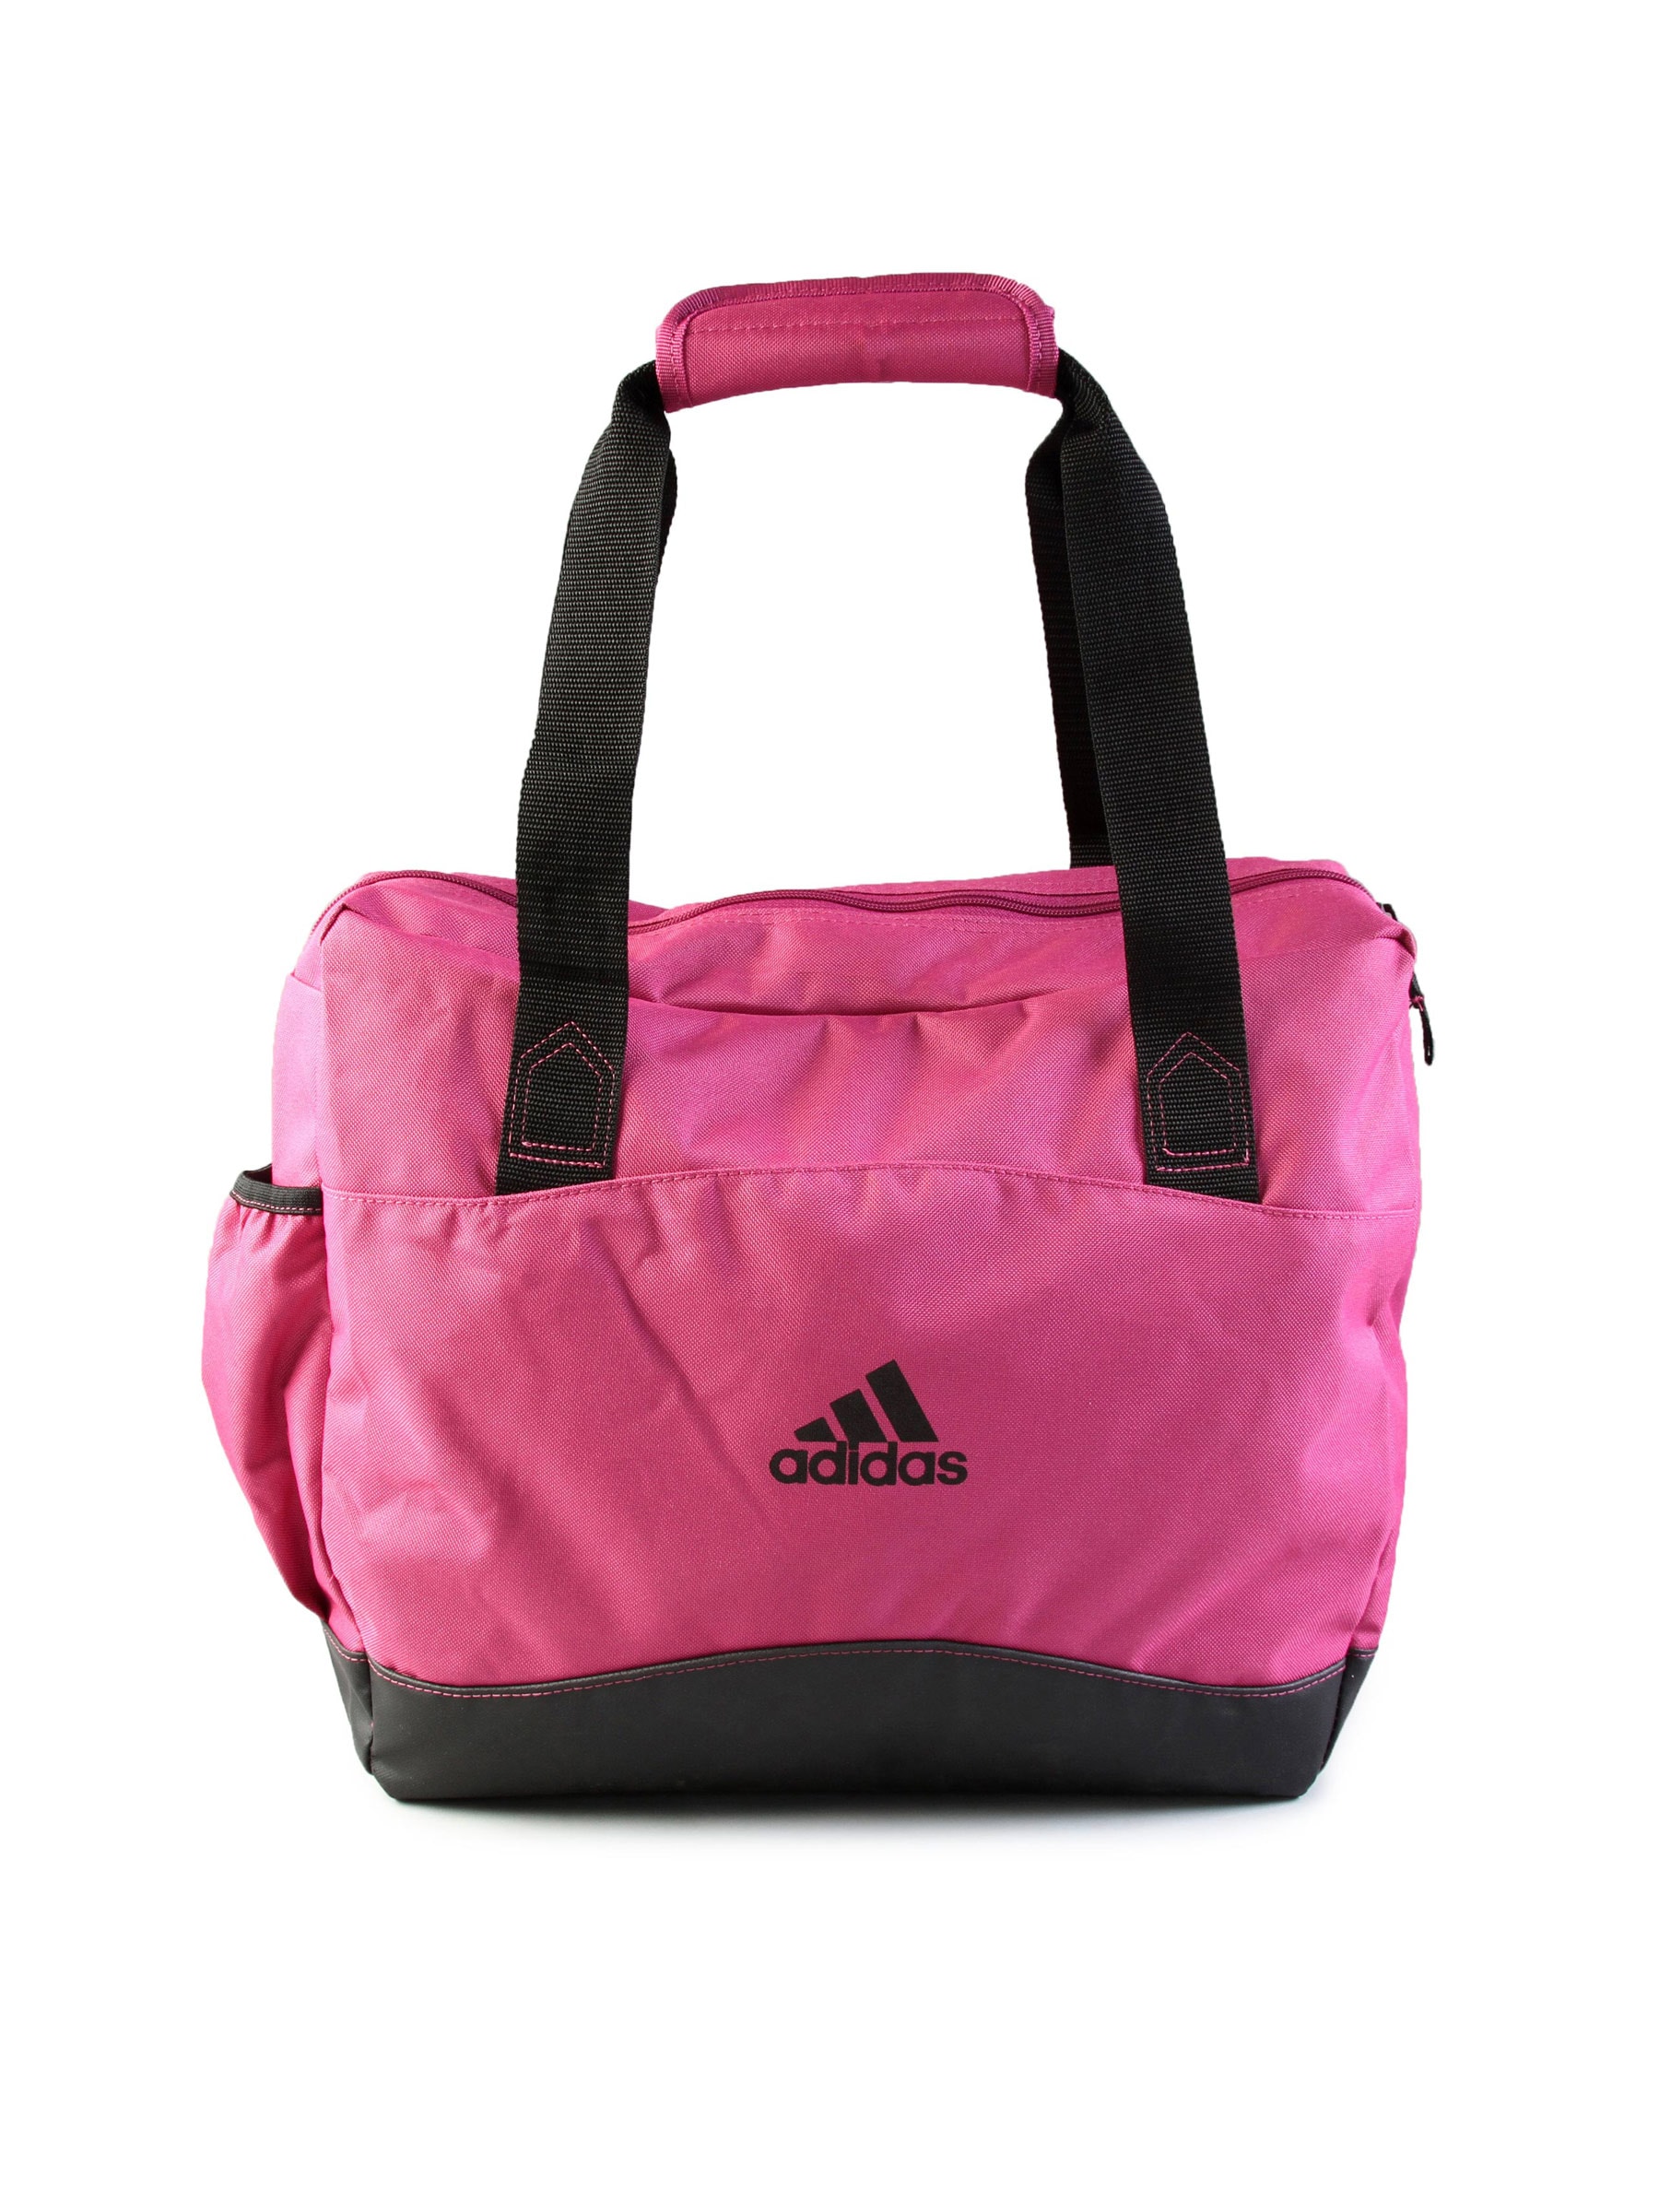 ADIDAS Pink Women Bag